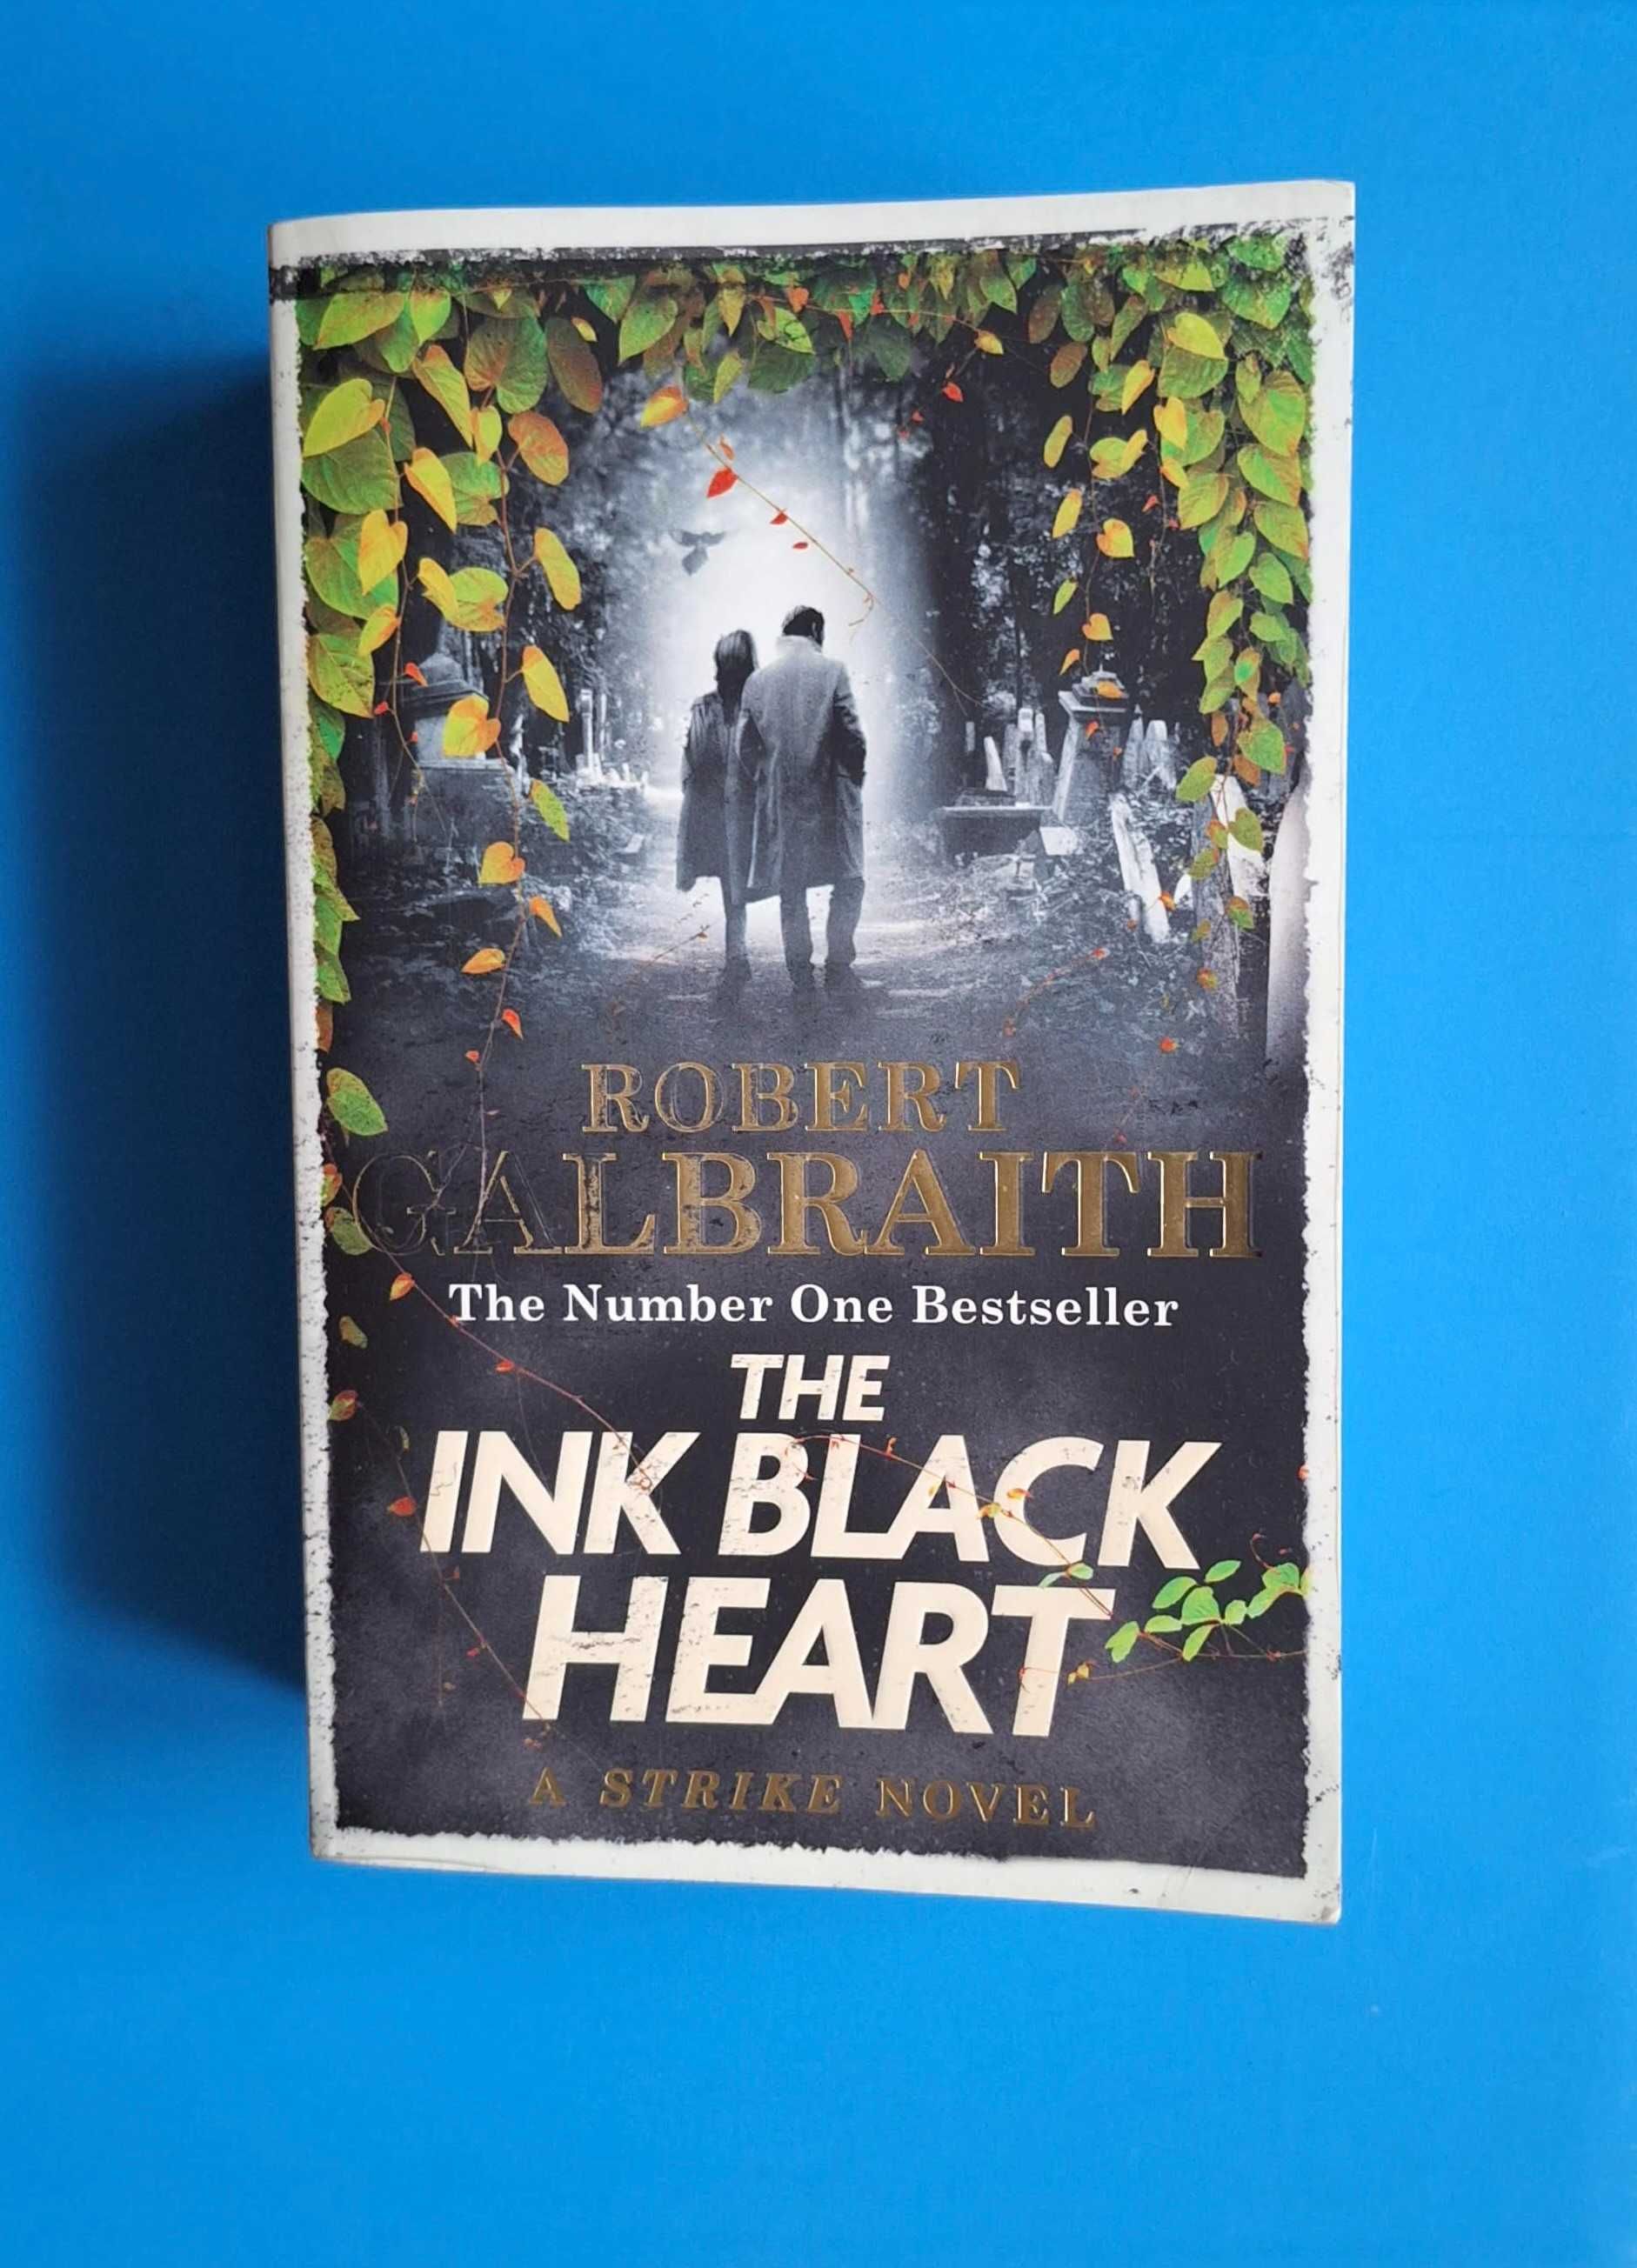 Robert Galbraith (J. K. Rowling) The Ink Black Heart Cormoran Strike